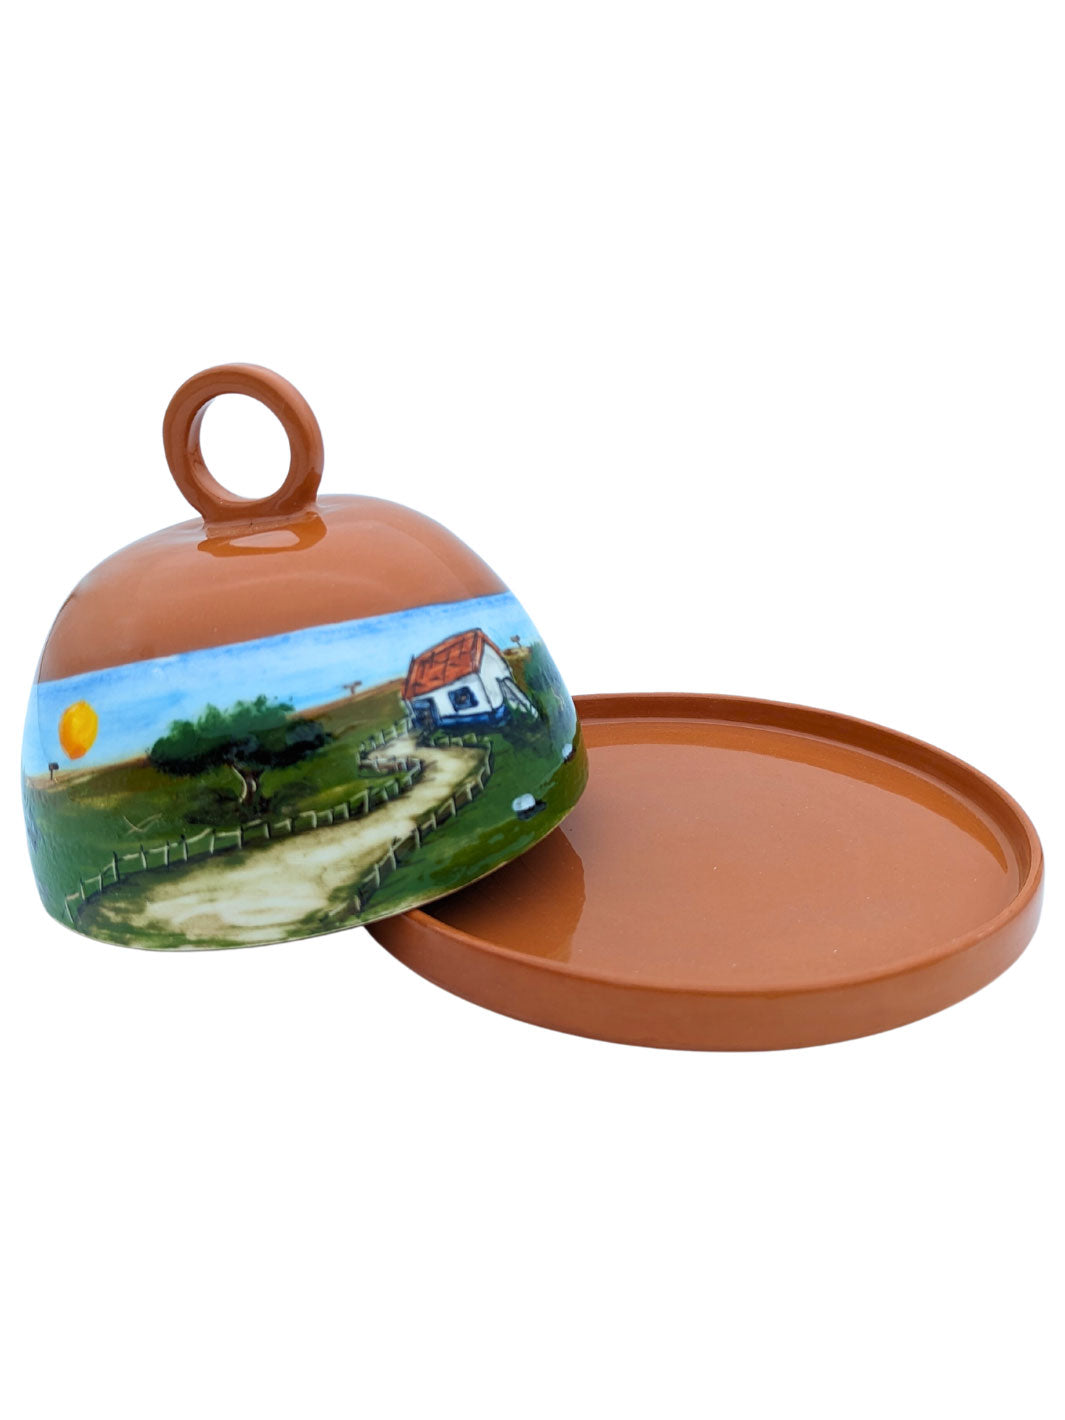 Alentejo Handcrafted Portuguese Pottery Ceramic Cheese Dome